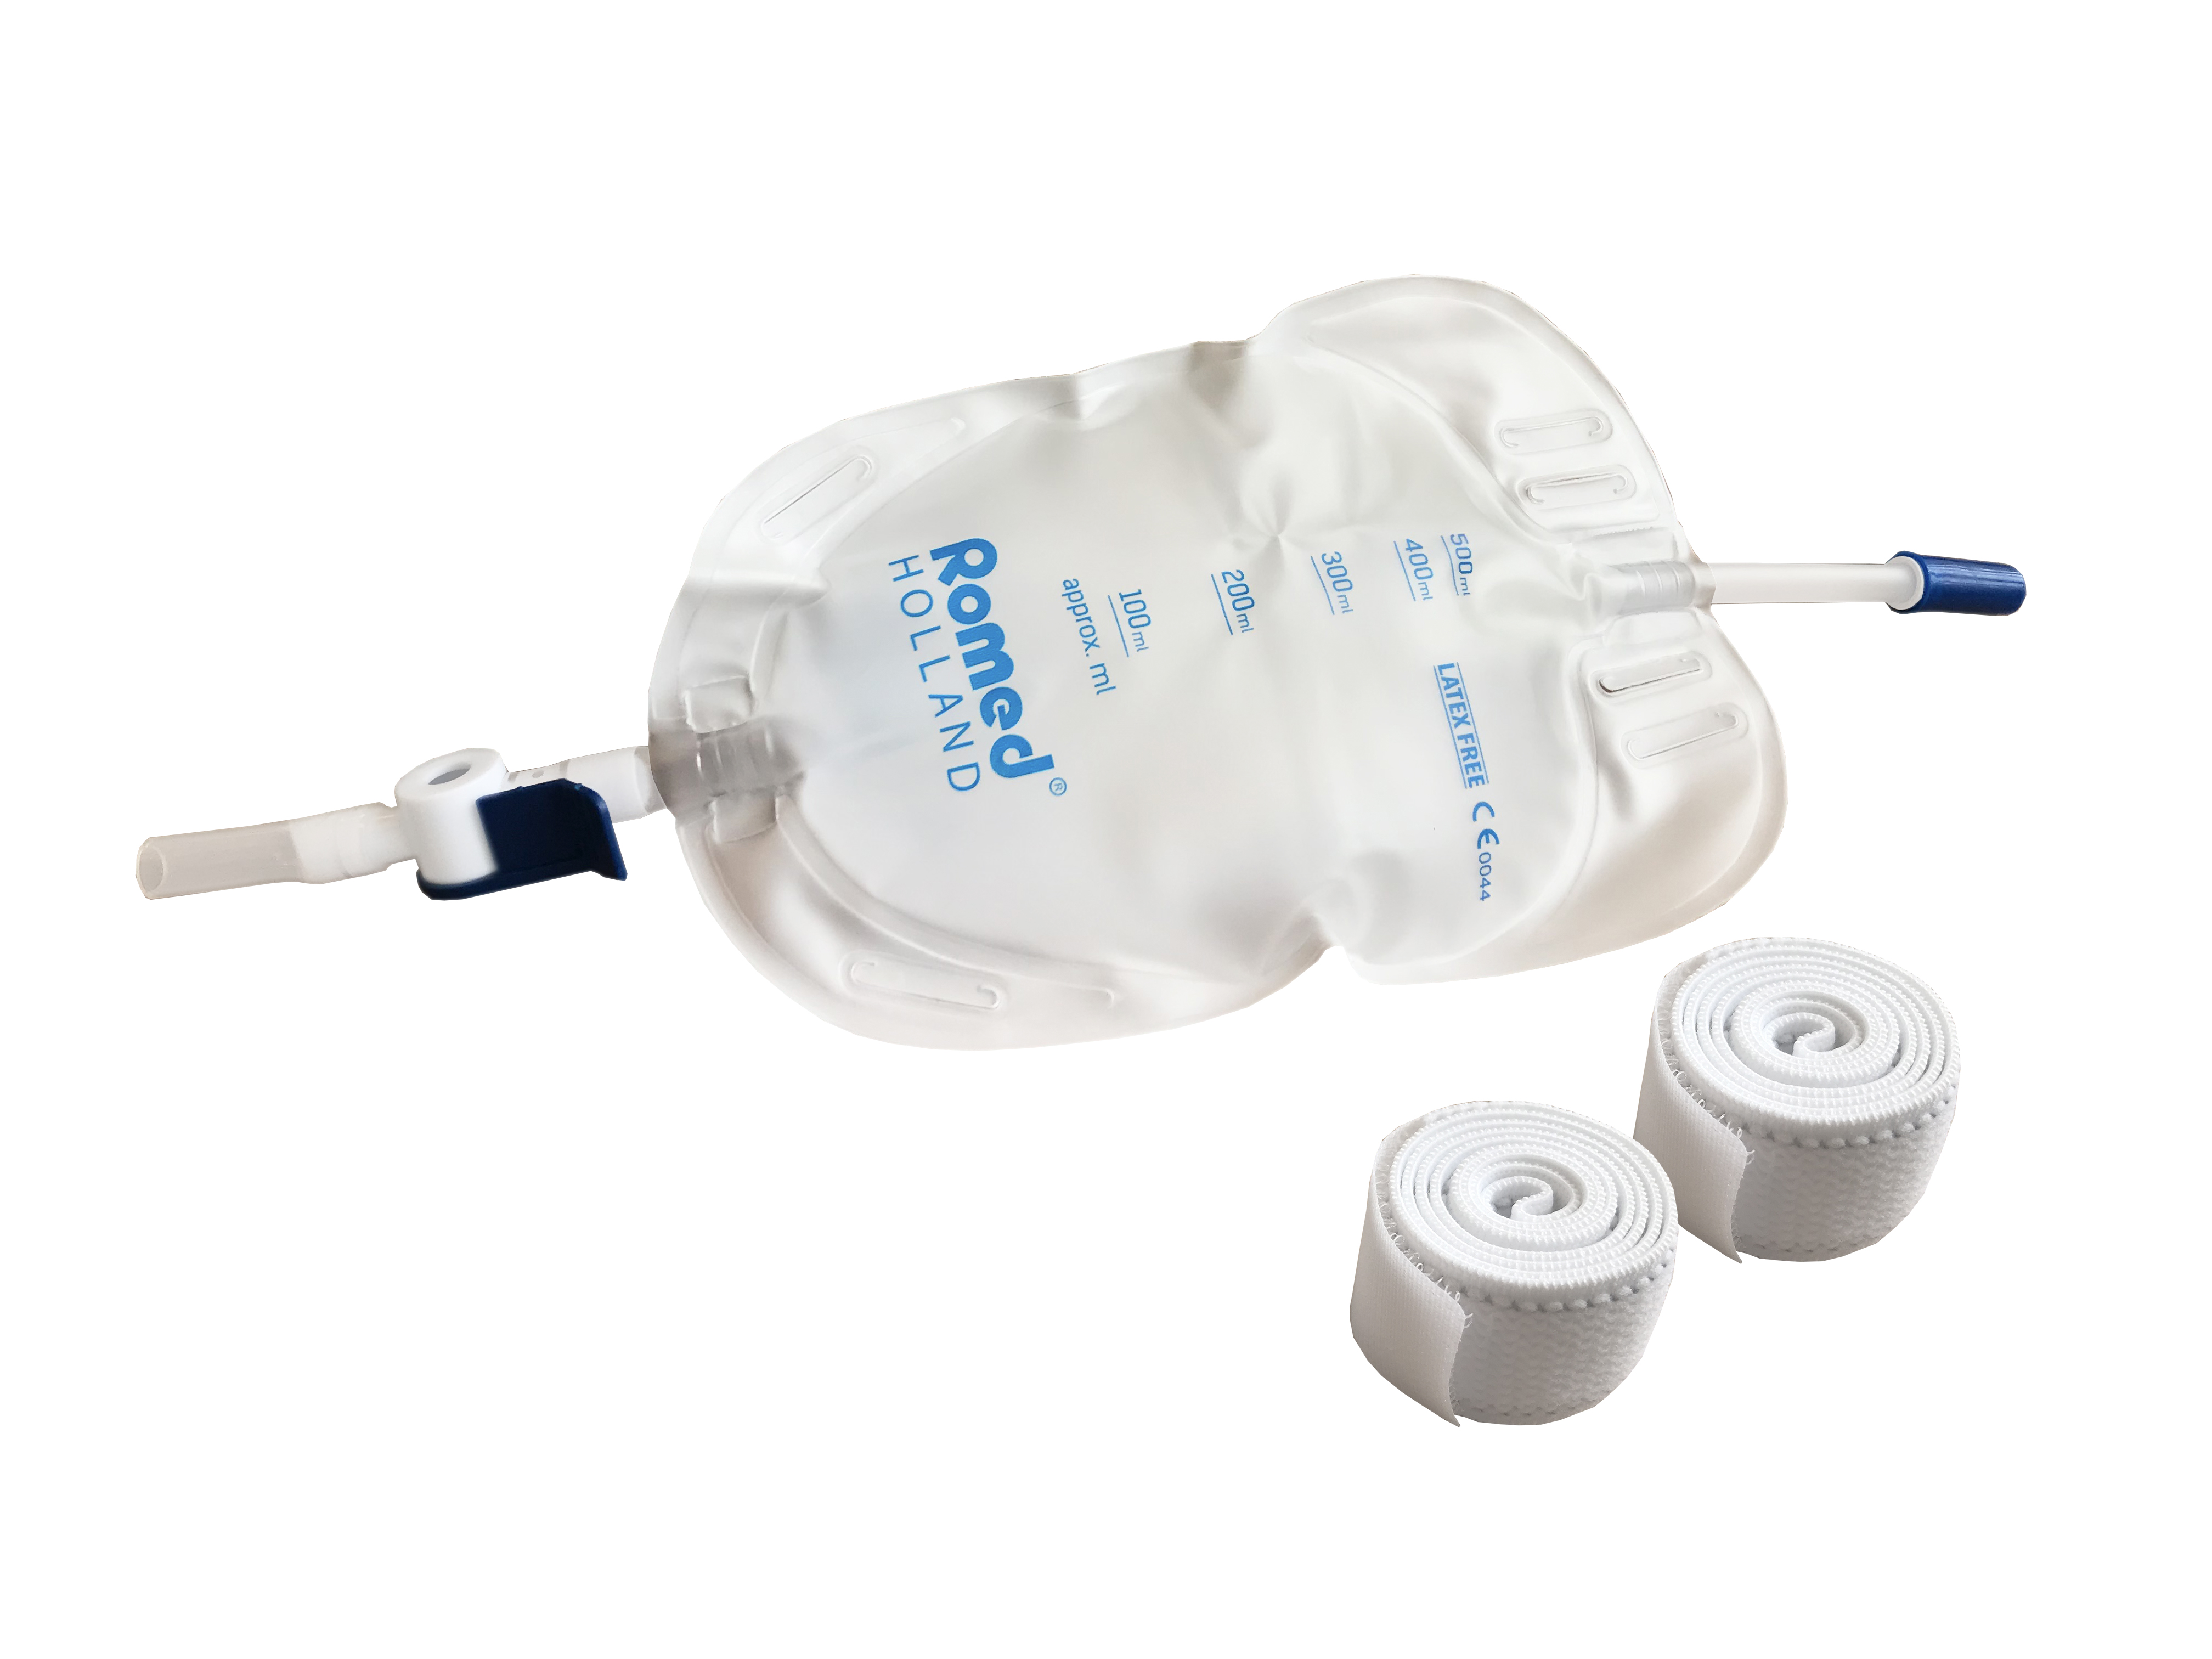 LB500ML-SOFT Romed urine beenzak soft, 500ml met ventiel en aftap, steriel verpakt per stuk, 80 stuks in een karton.